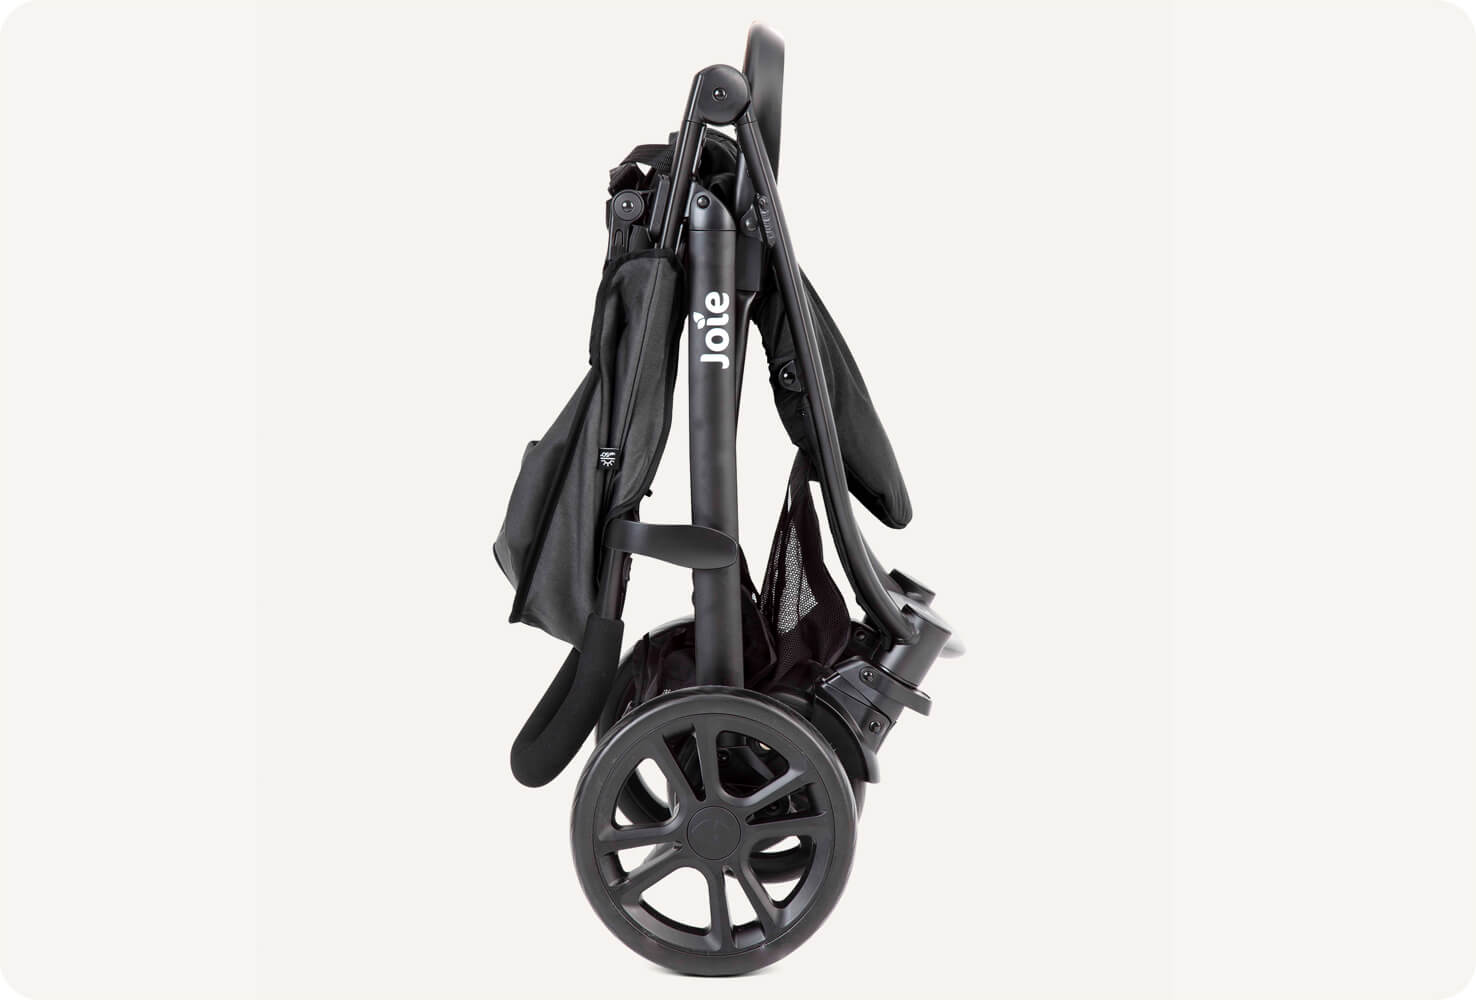 Black Joie Litetrax E stroller folded, in profile.